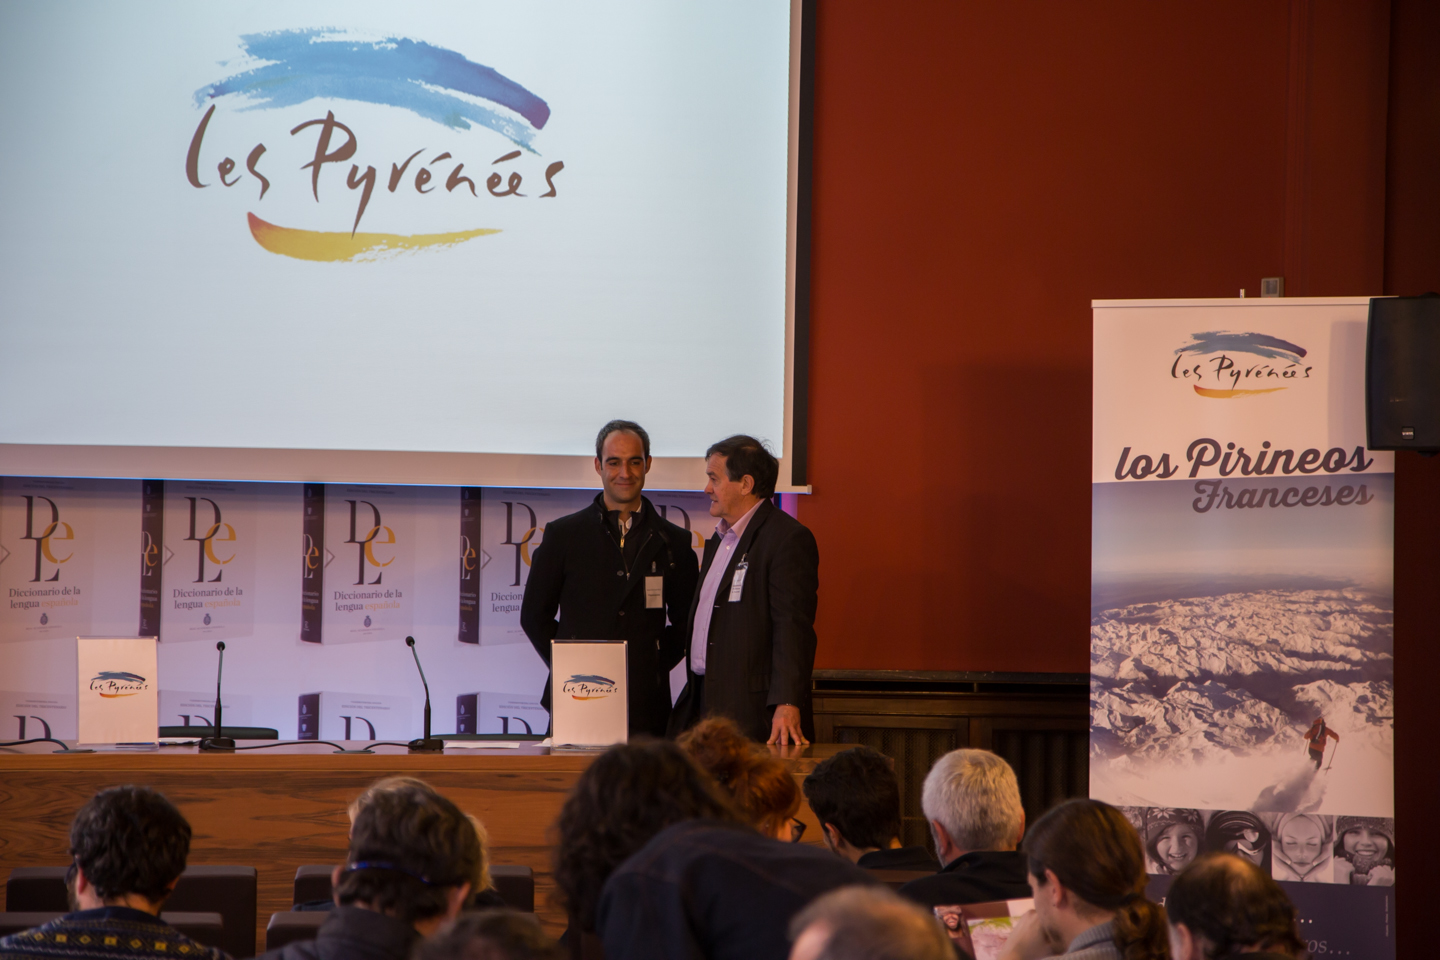 Presentación de la Confederación de Turismo de los Pirineos franceses